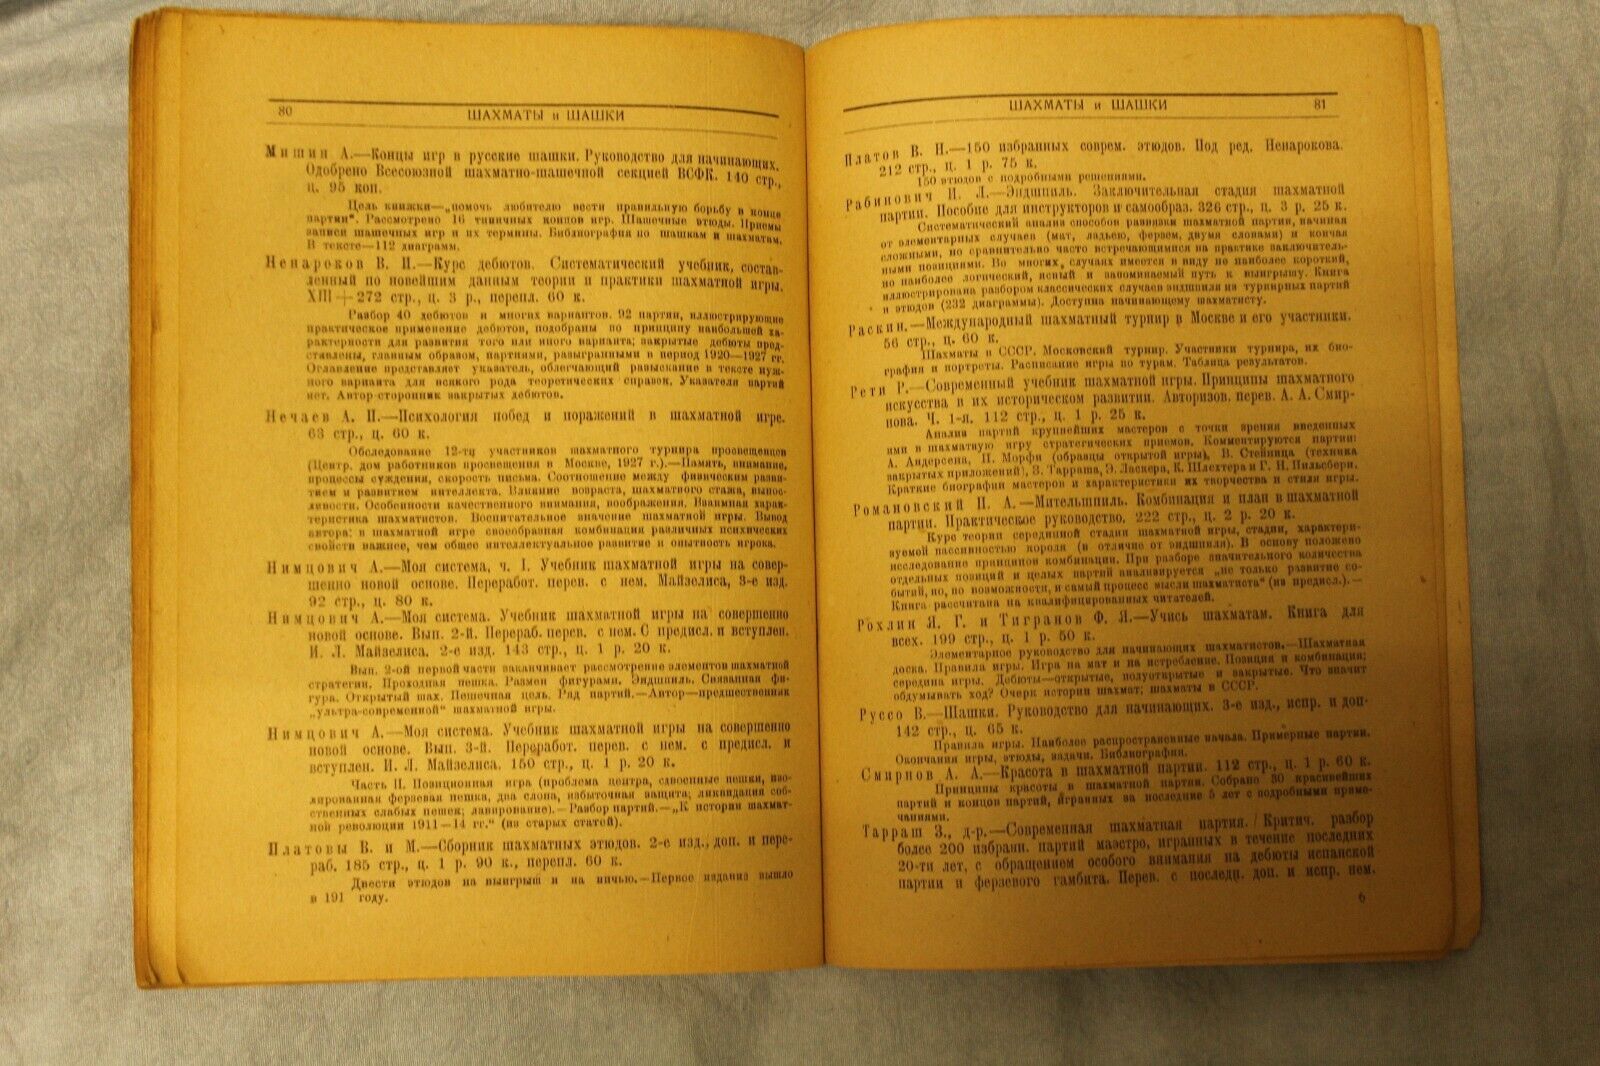 11687.Soviet Chess book Baturinsky-Karpov library: tourism hygiene chess&sport 1930